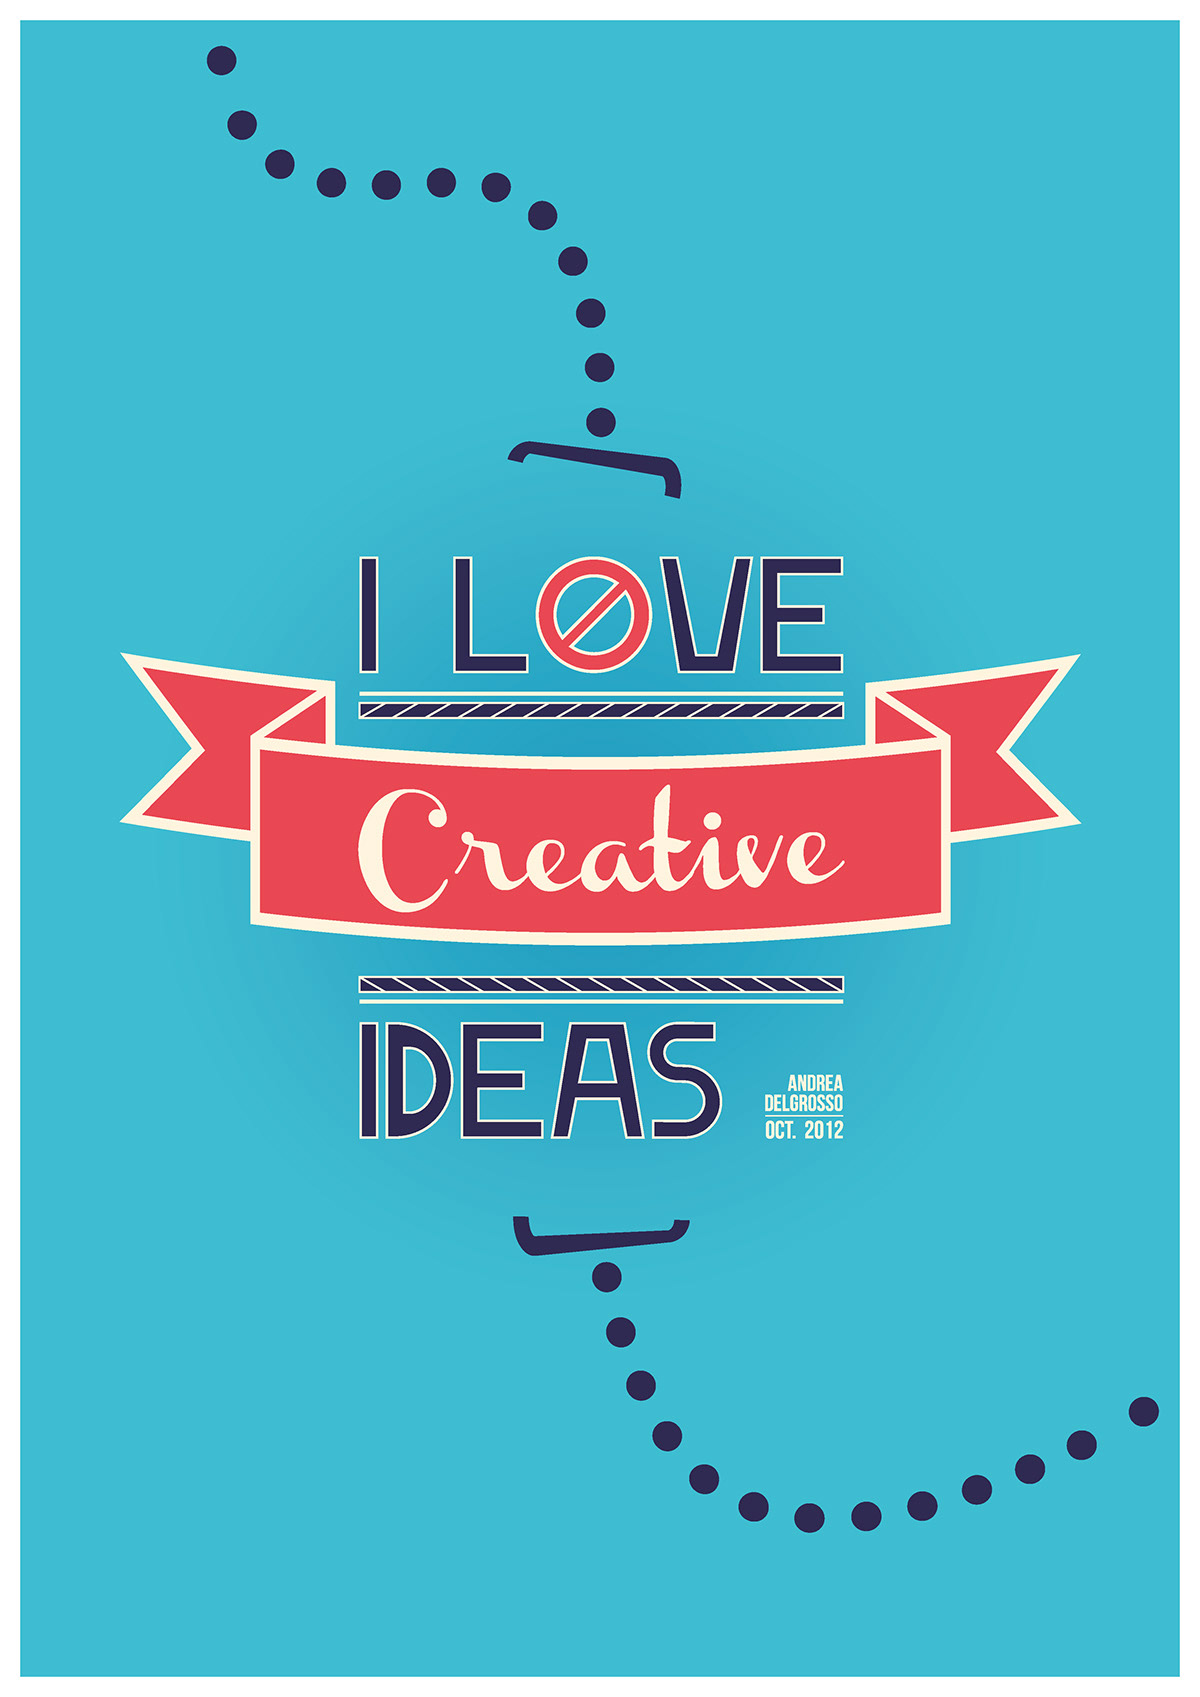 ideas creatives